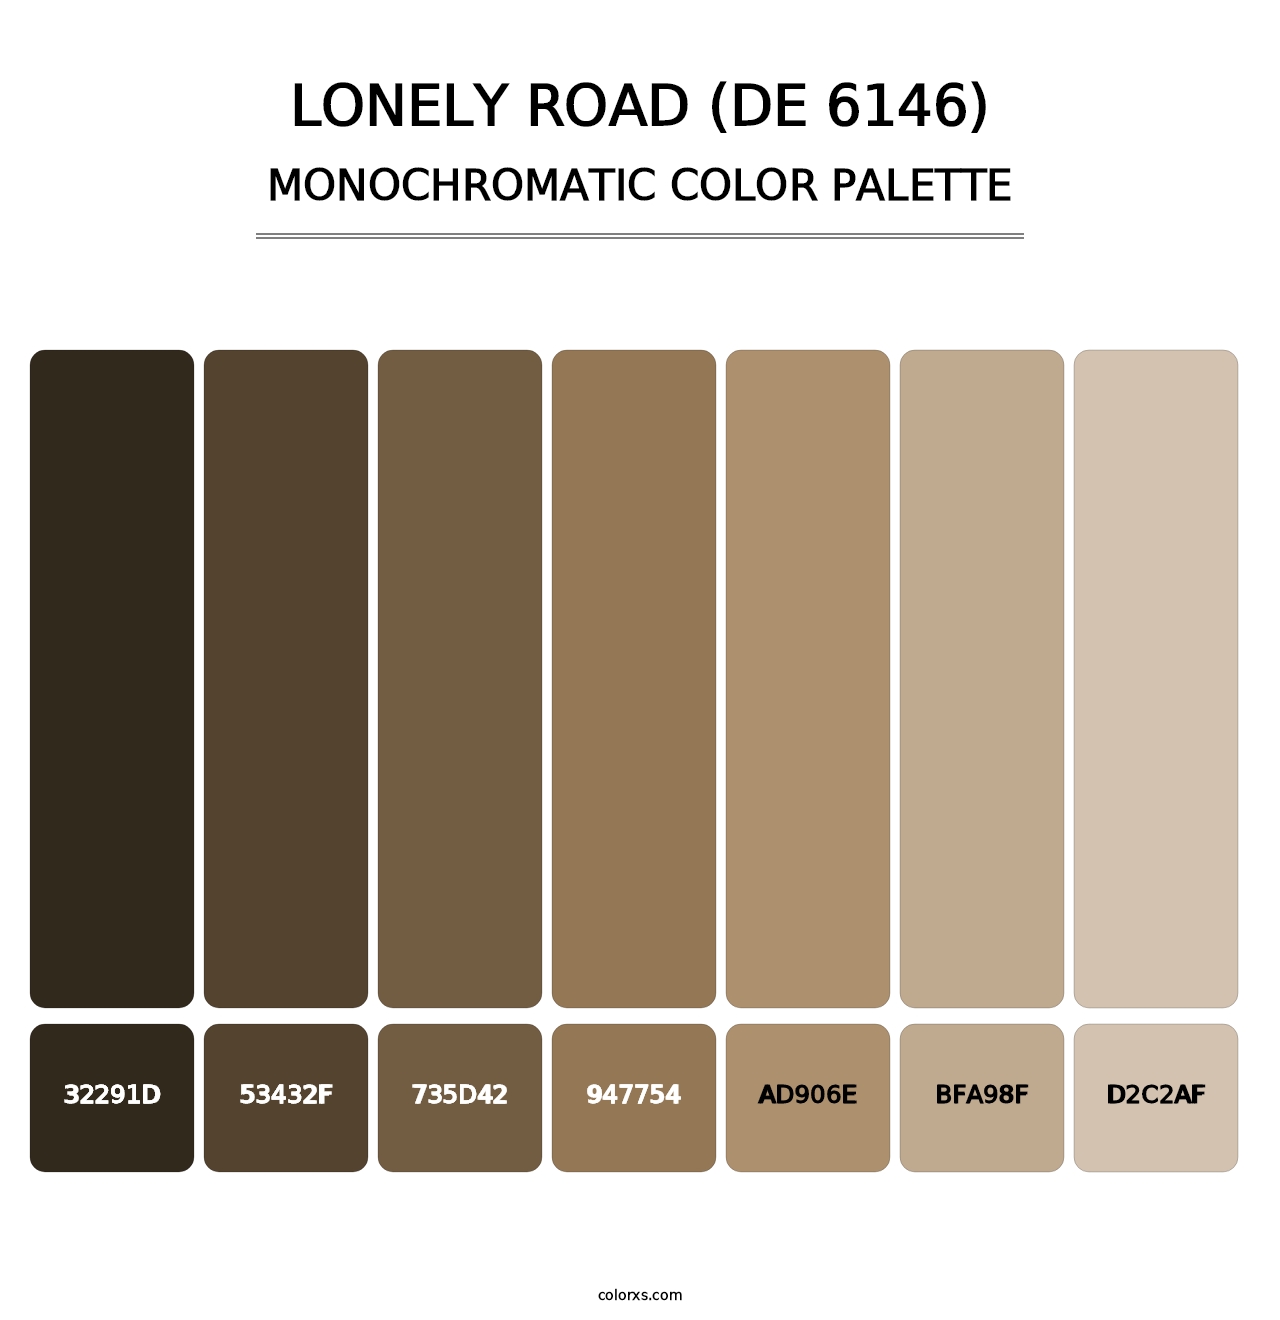 Lonely Road (DE 6146) - Monochromatic Color Palette